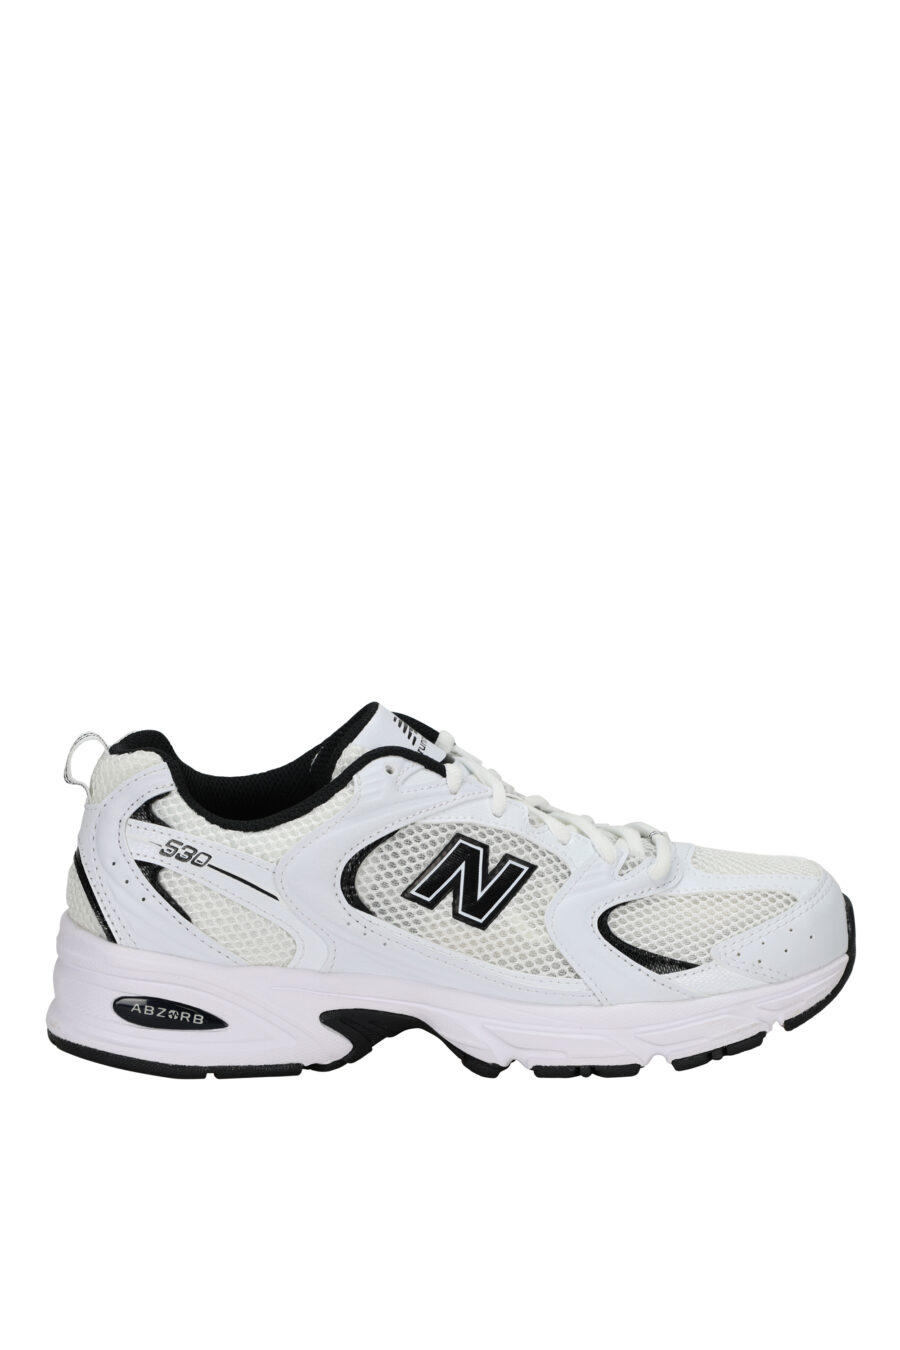 Zapatillas blancas con negro "530" con logo "N" negro - 196071167954